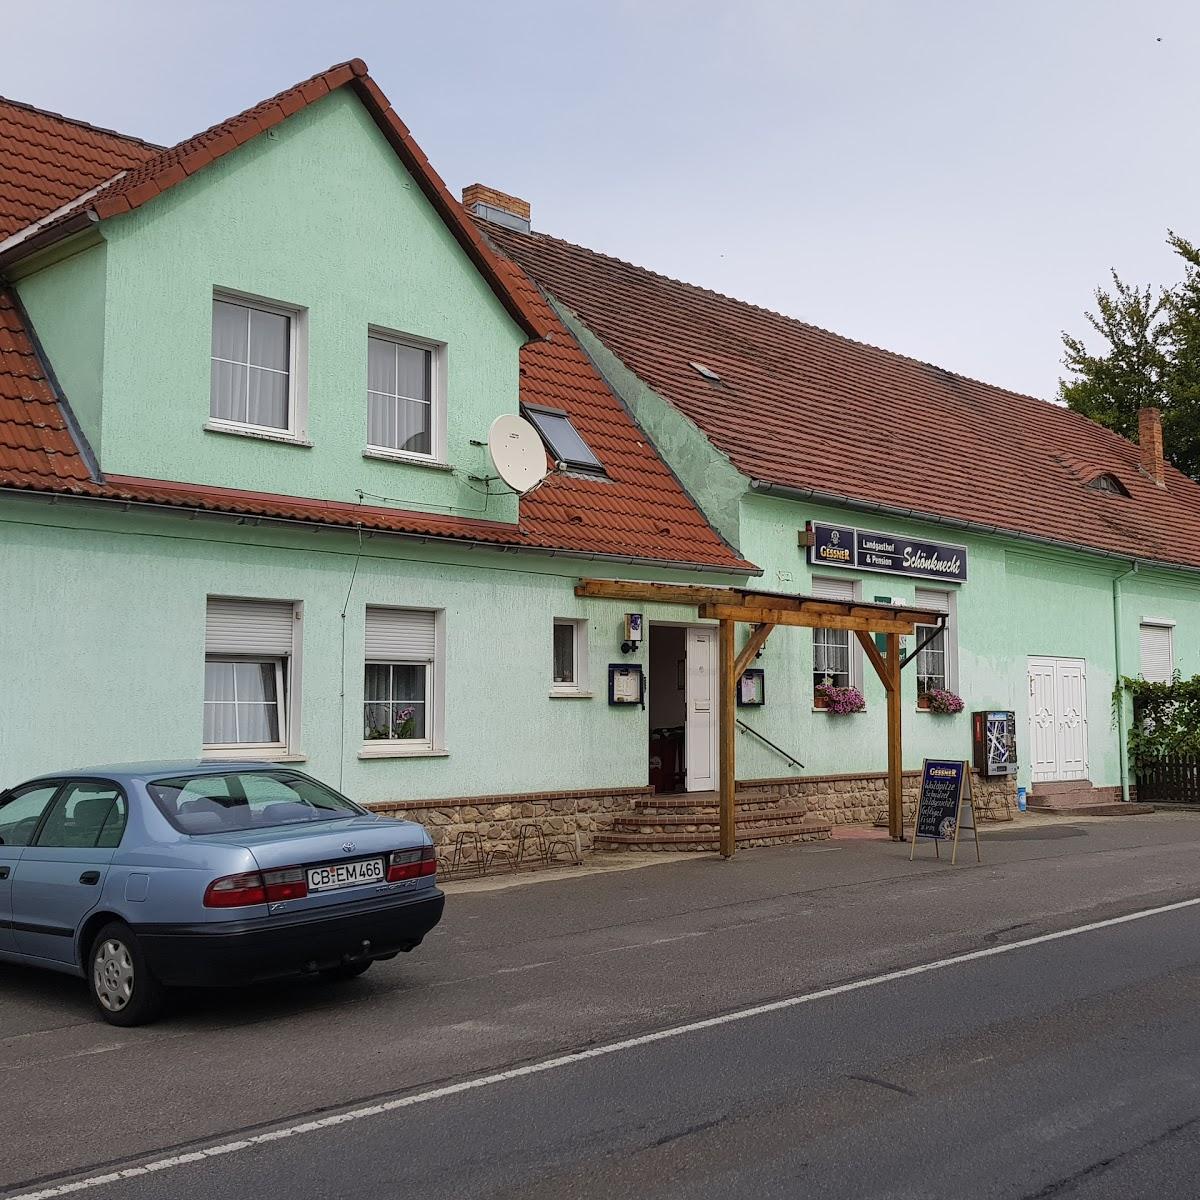 Restaurant "Landgasthof Schönknecht" in Drebkau